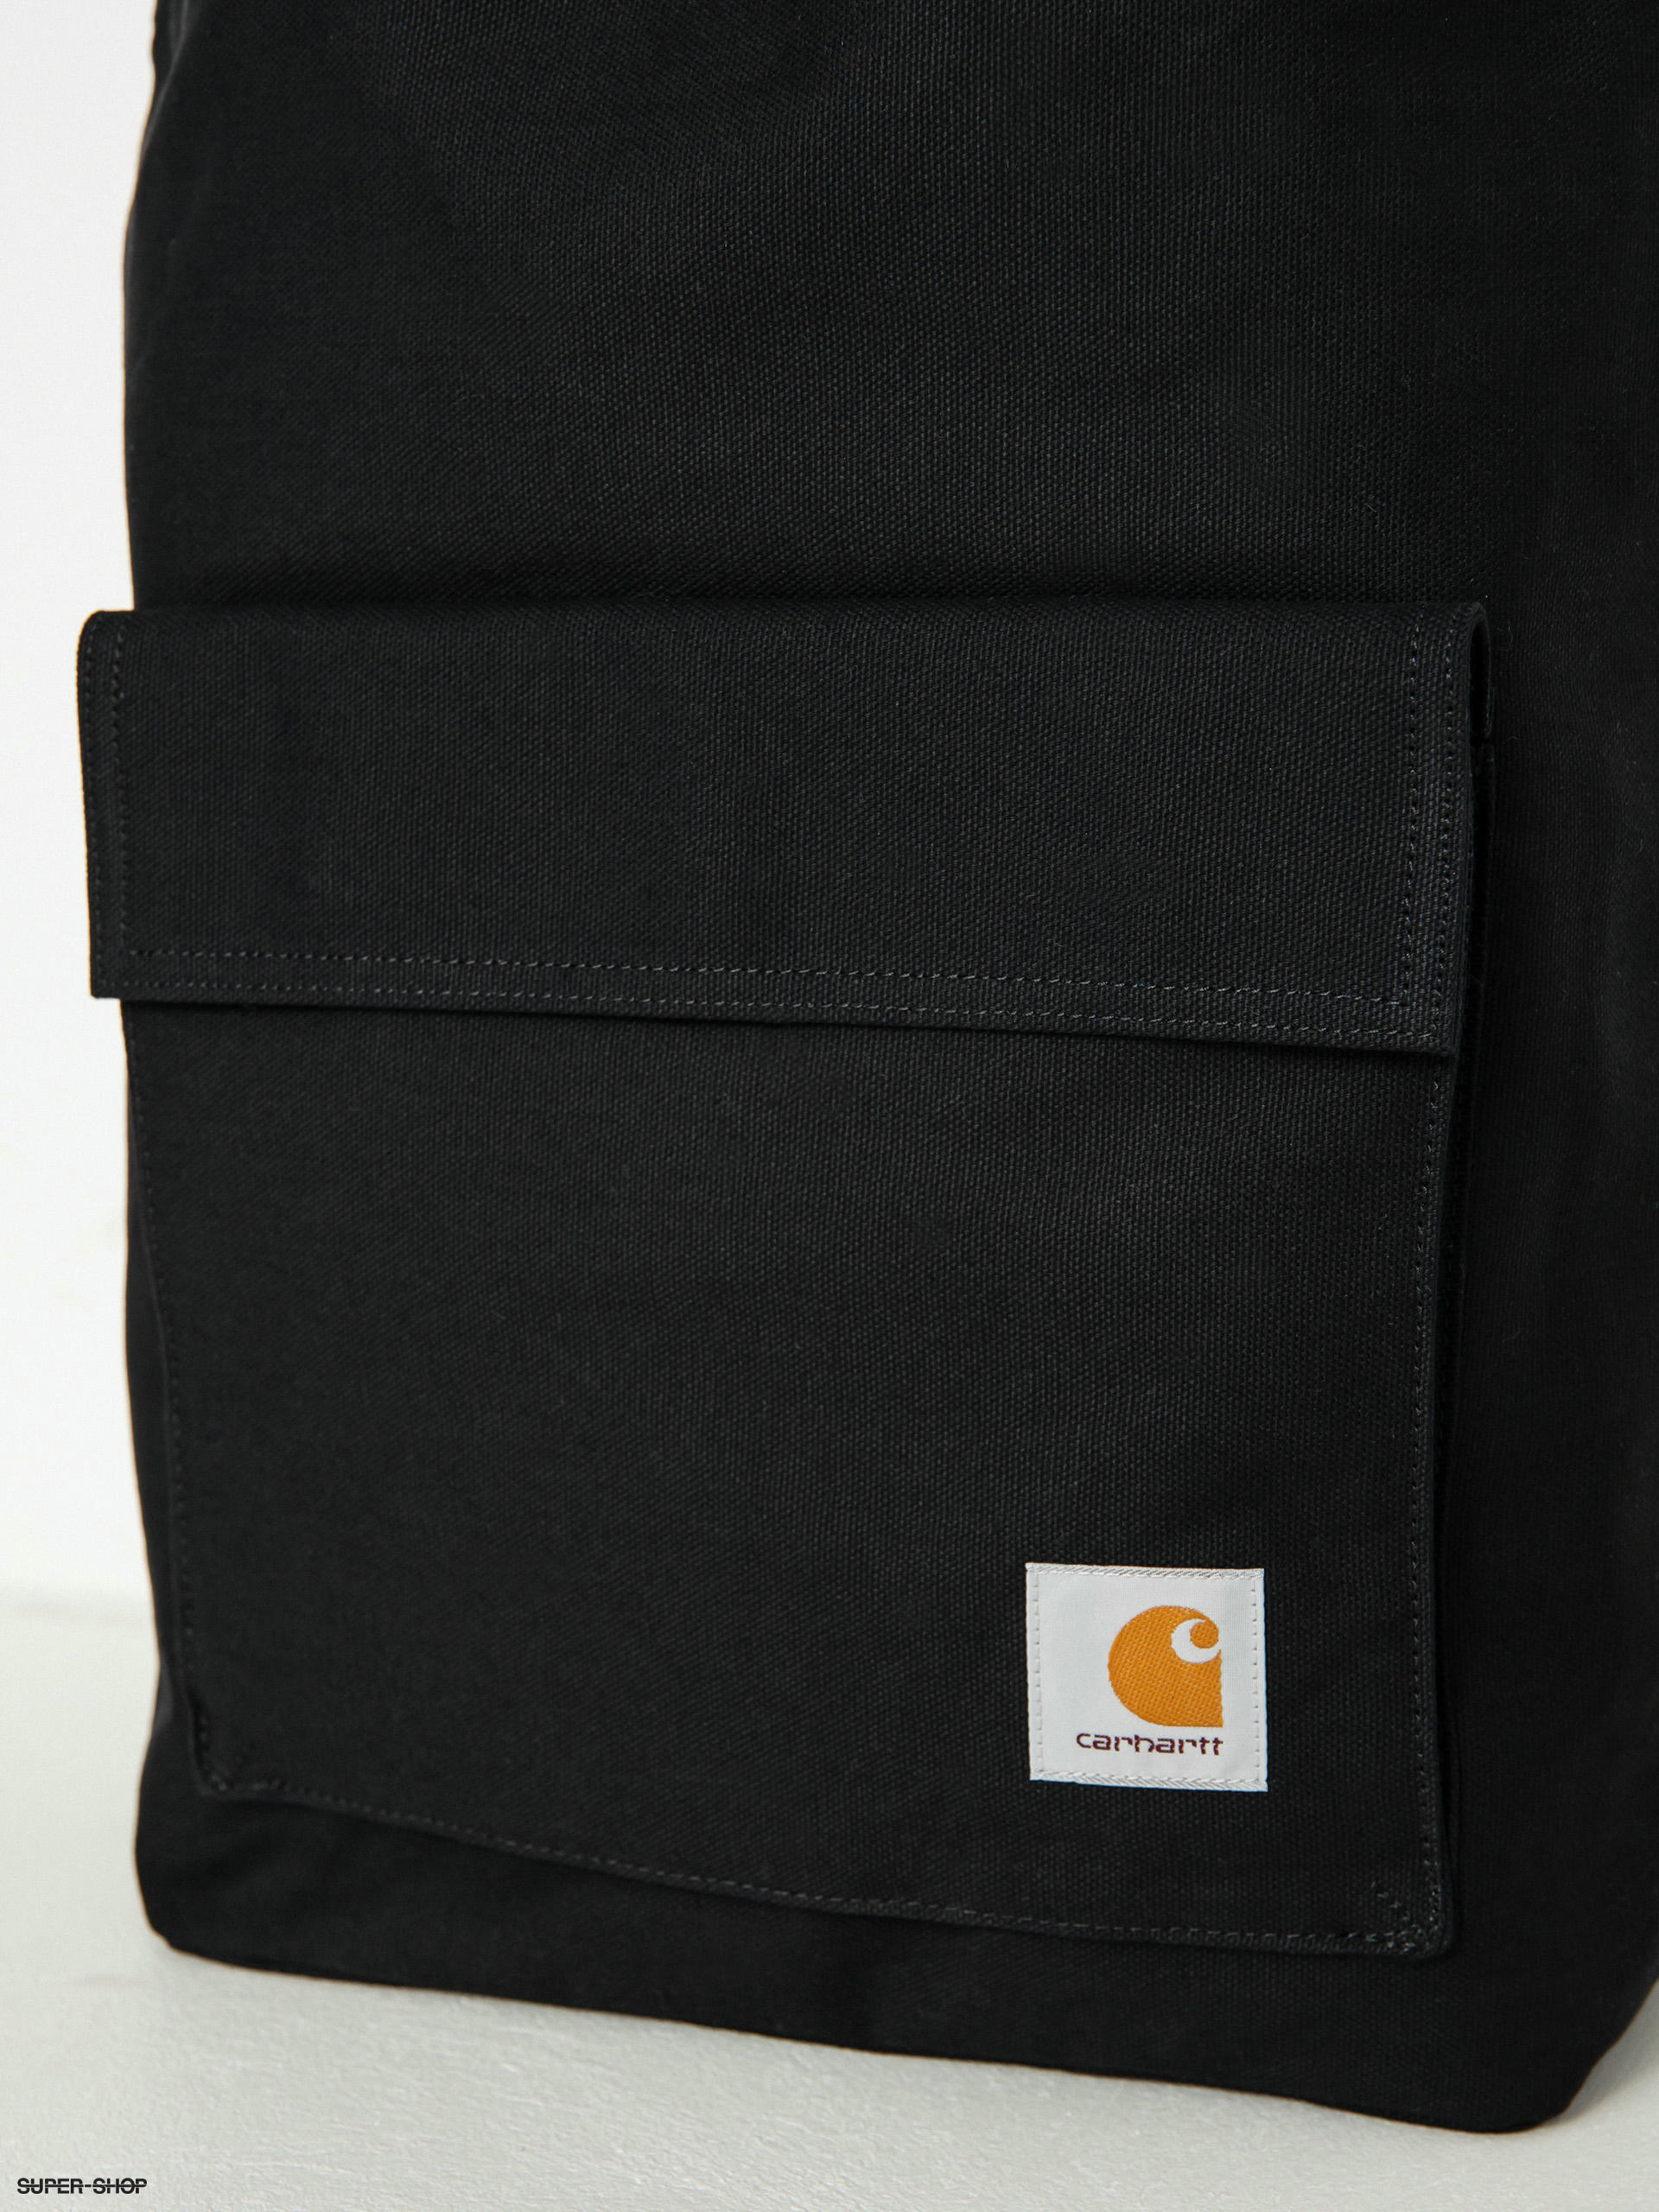 Carhartt WIP bag Dawn black color